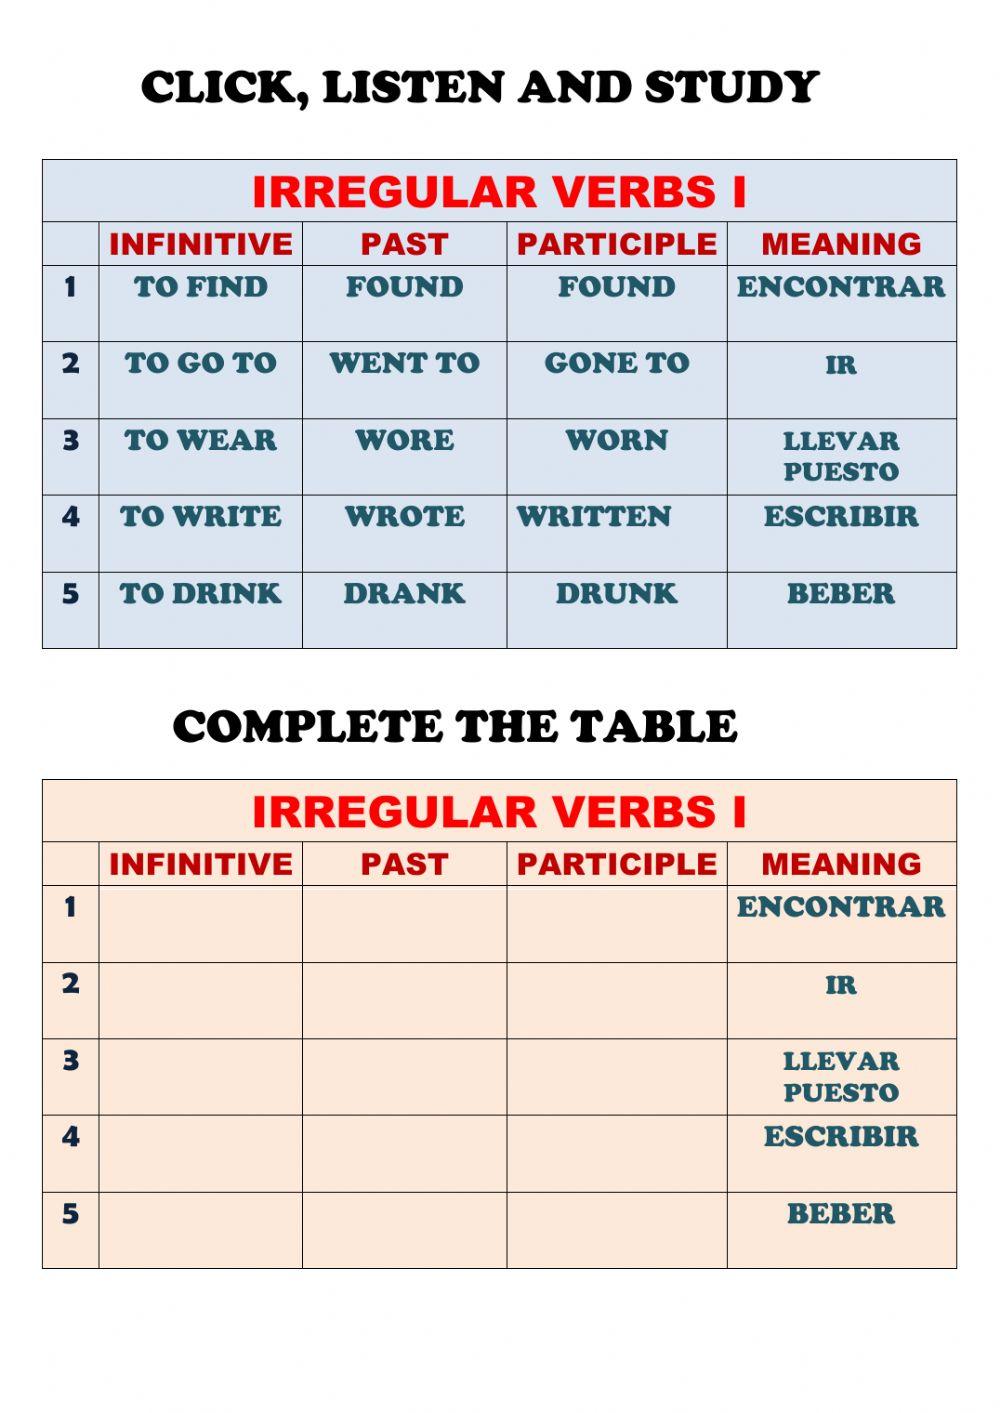 Five irregular verbs